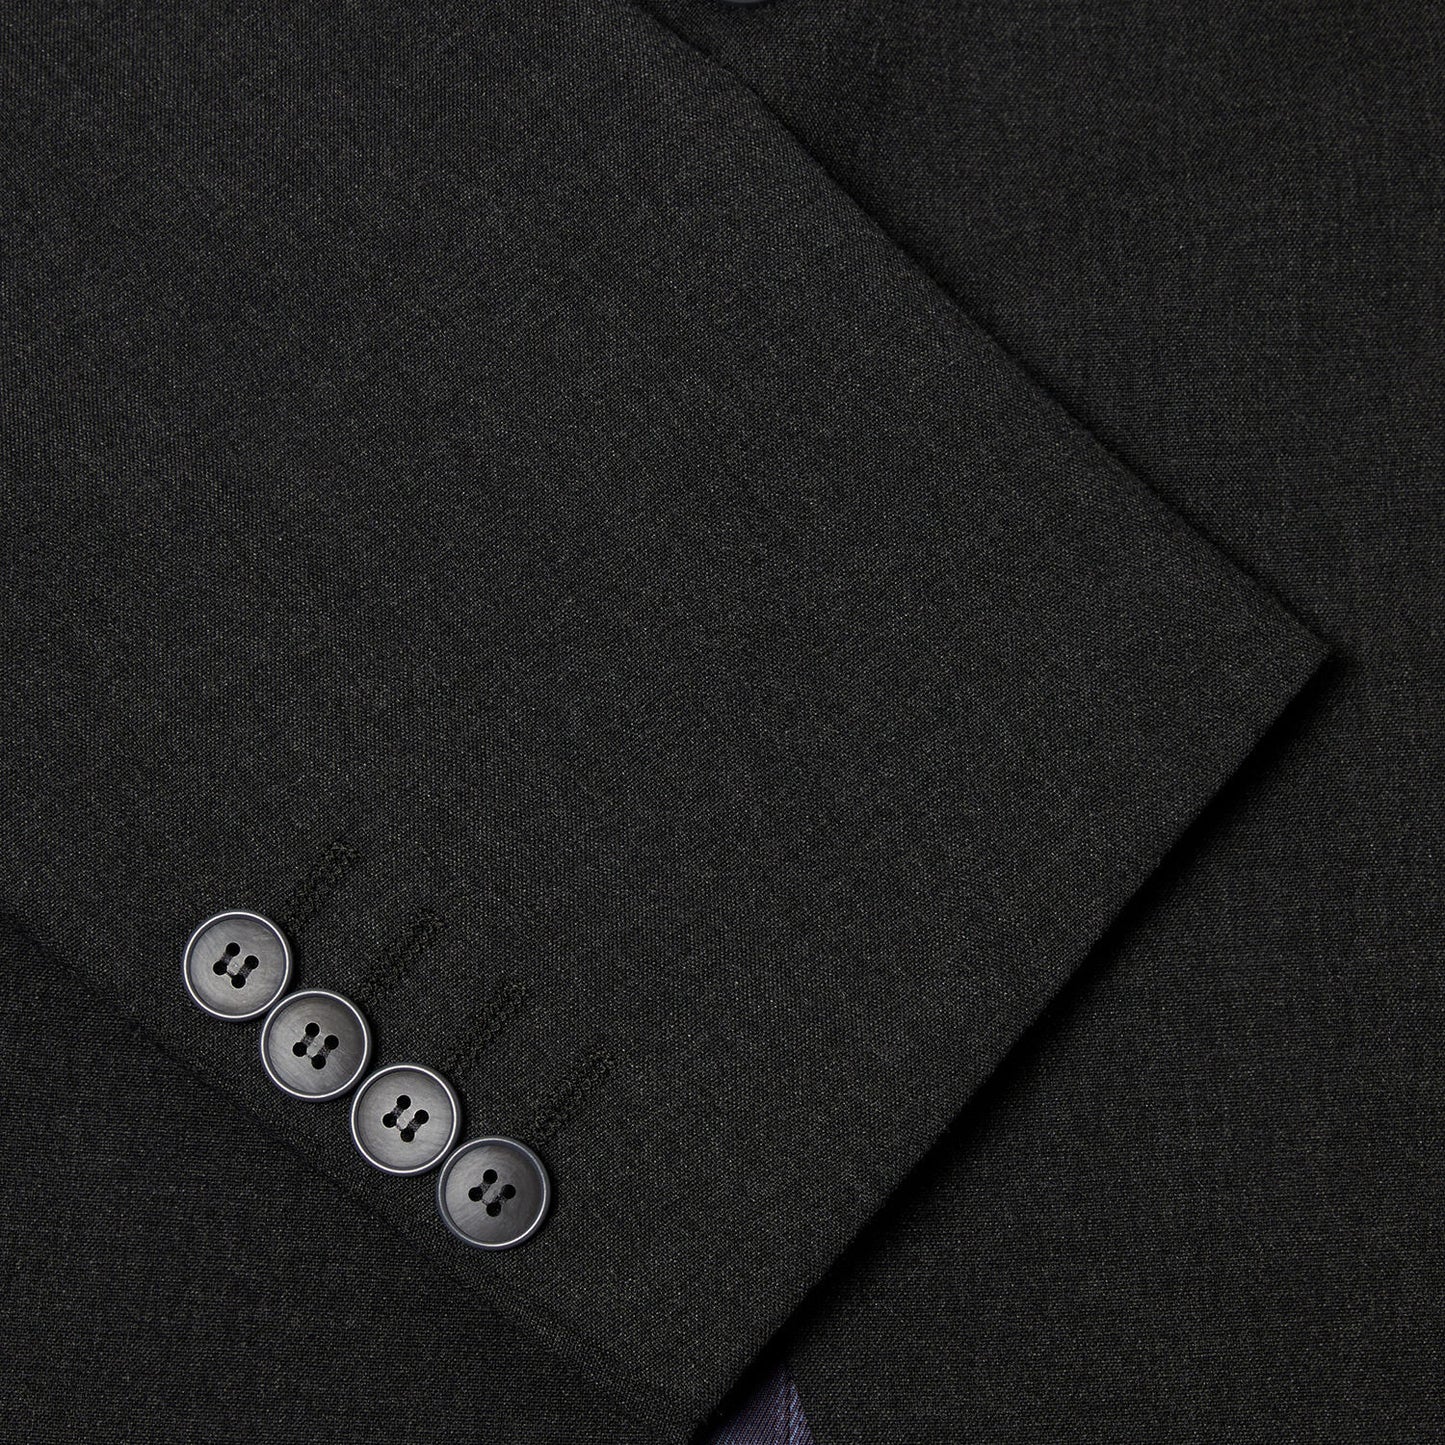 Daniel Grahame 13030 08 Charcoal Mix & Match Suit Jacket